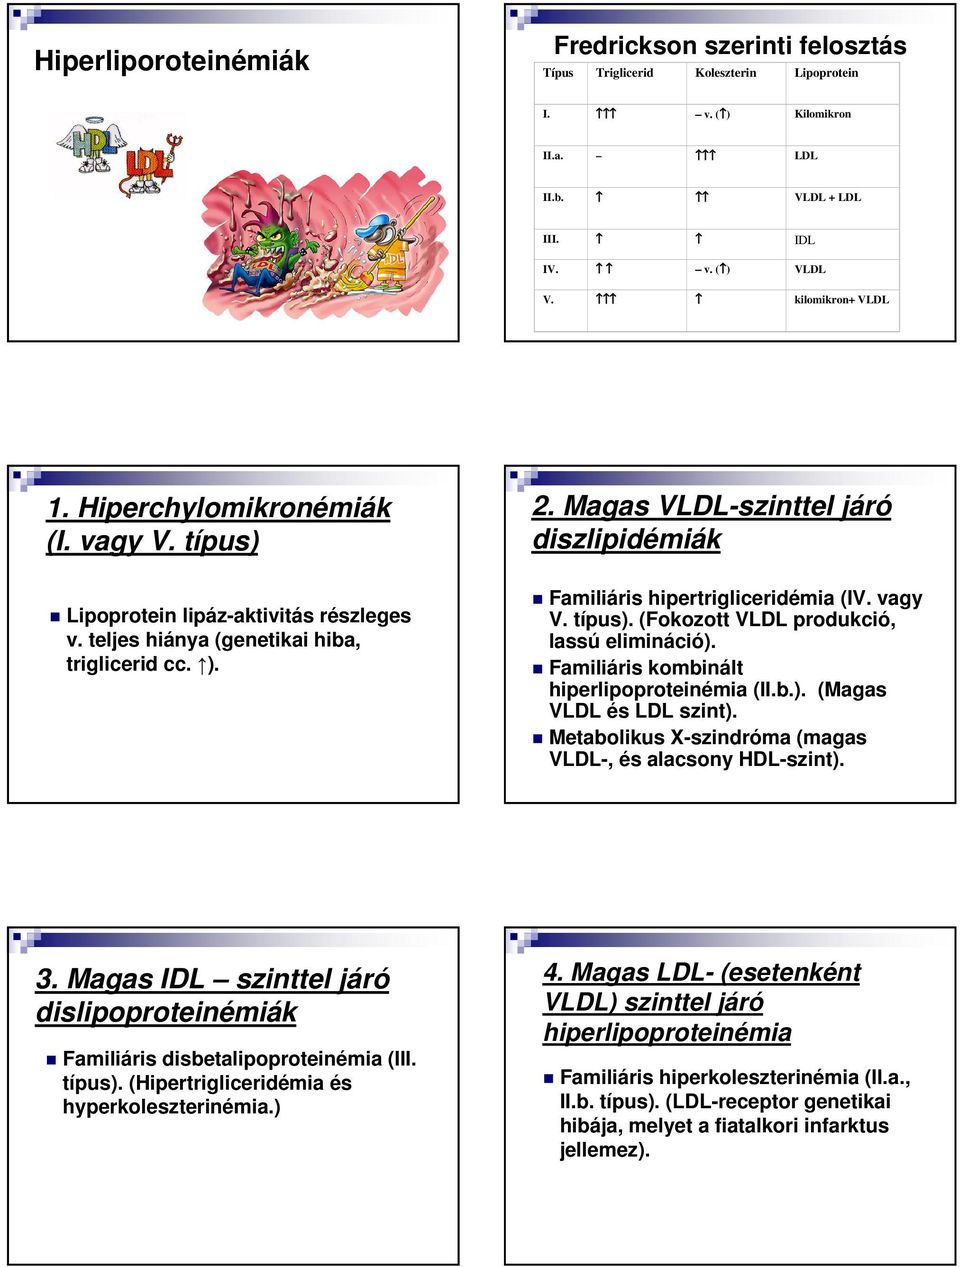 Magas VLDL-szinttel járó diszlipidémiák Familiáris hipertrigliceridémia (IV. vagy V. típus). (Fokozott VLDL produkció, lassú elimináció). Familiáris kombinált hiperlipoproteinémia (II.b.). (Magas VLDL és LDL szint).